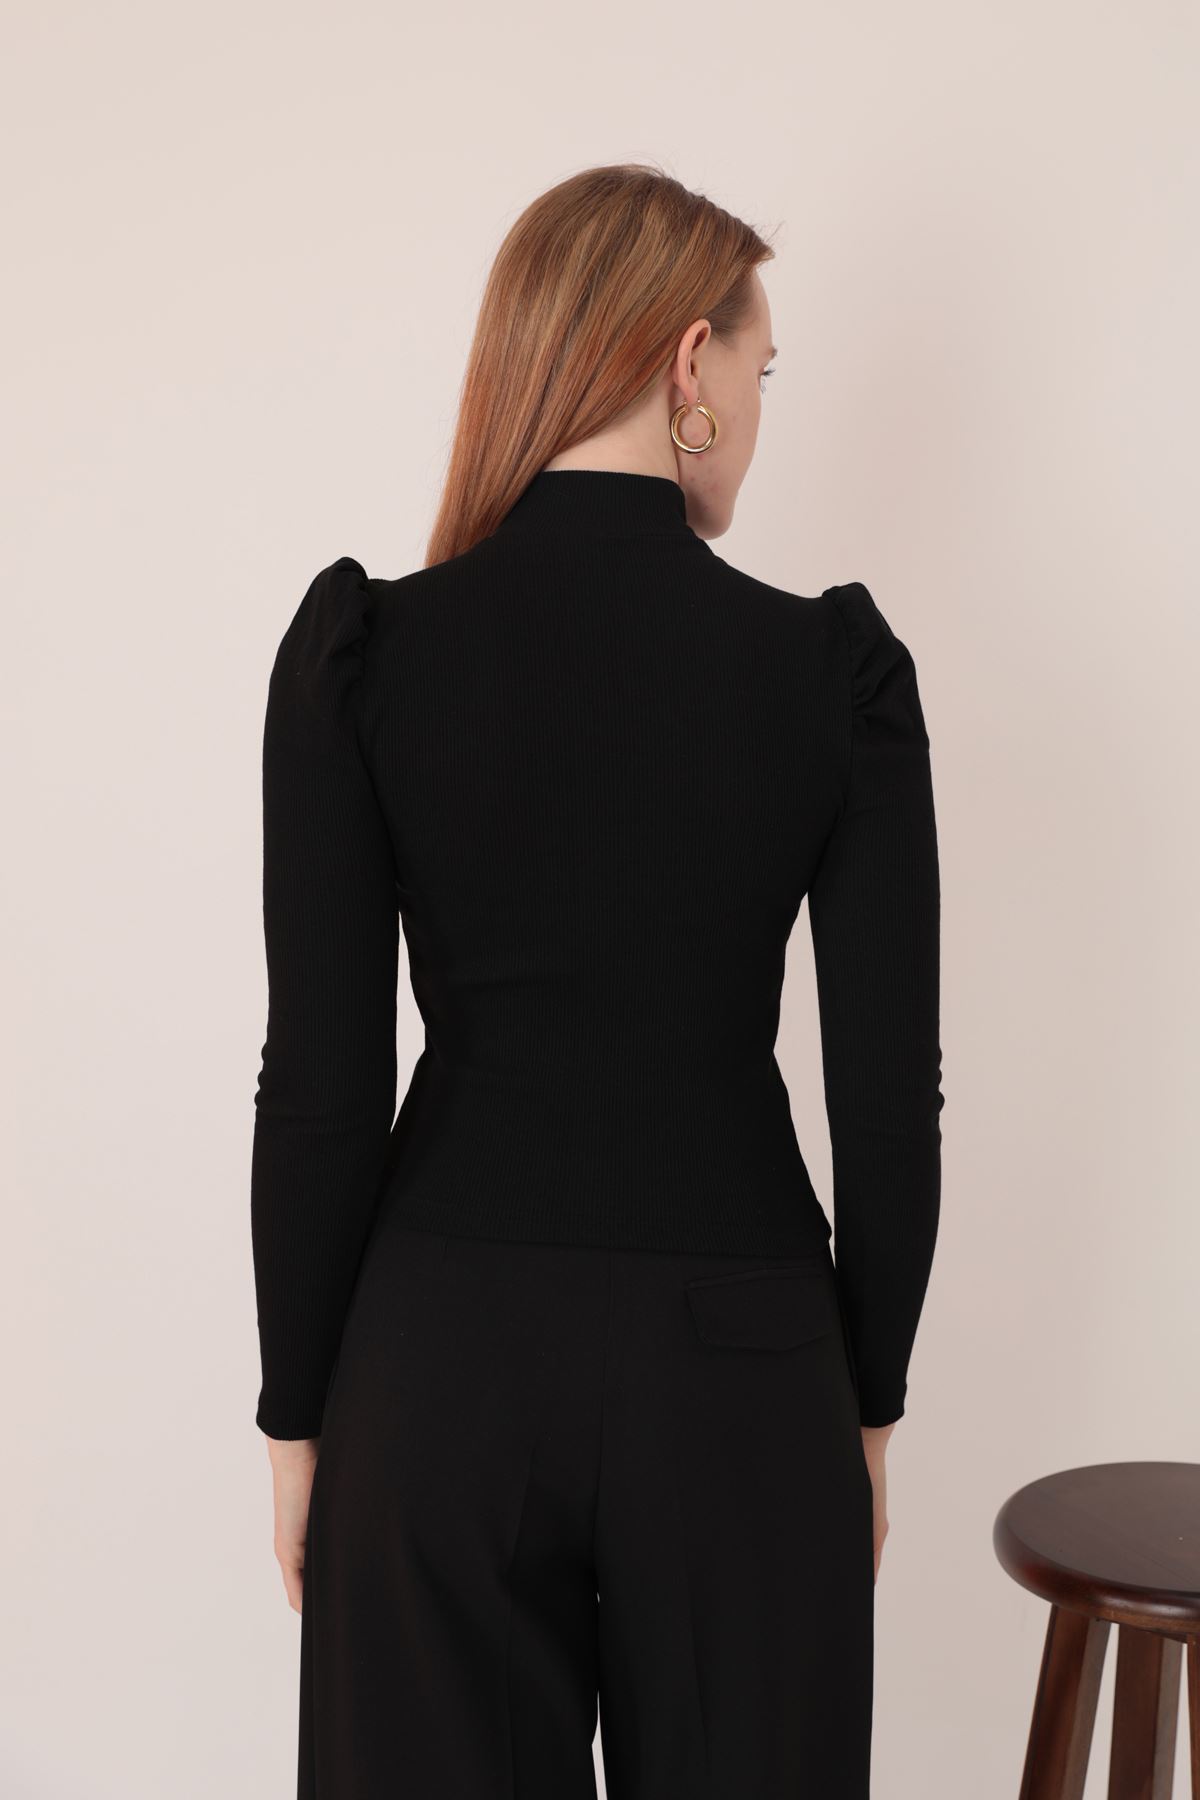 Женская блузка из ткани Camisole с окошком на рукаве арбуза-Чёрный